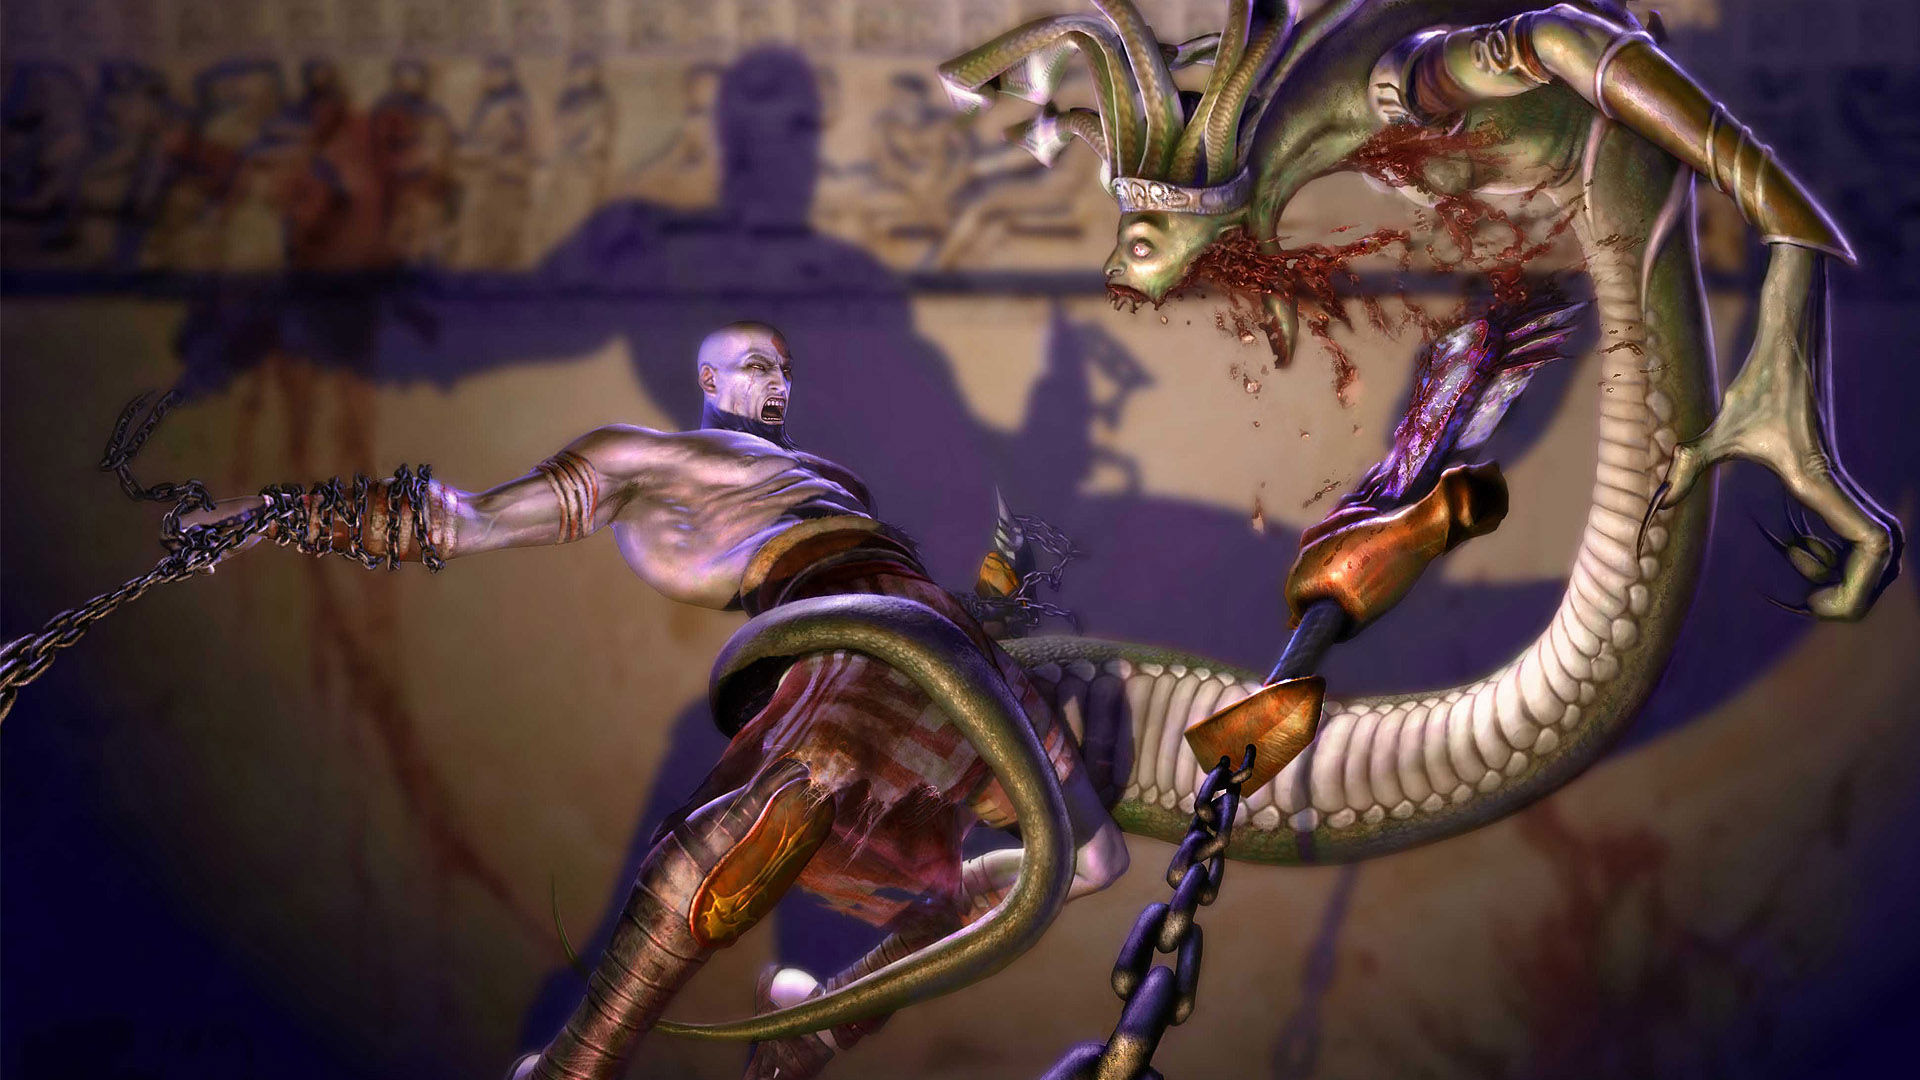 Kratos from God of War facing Medusa in an epic battle.